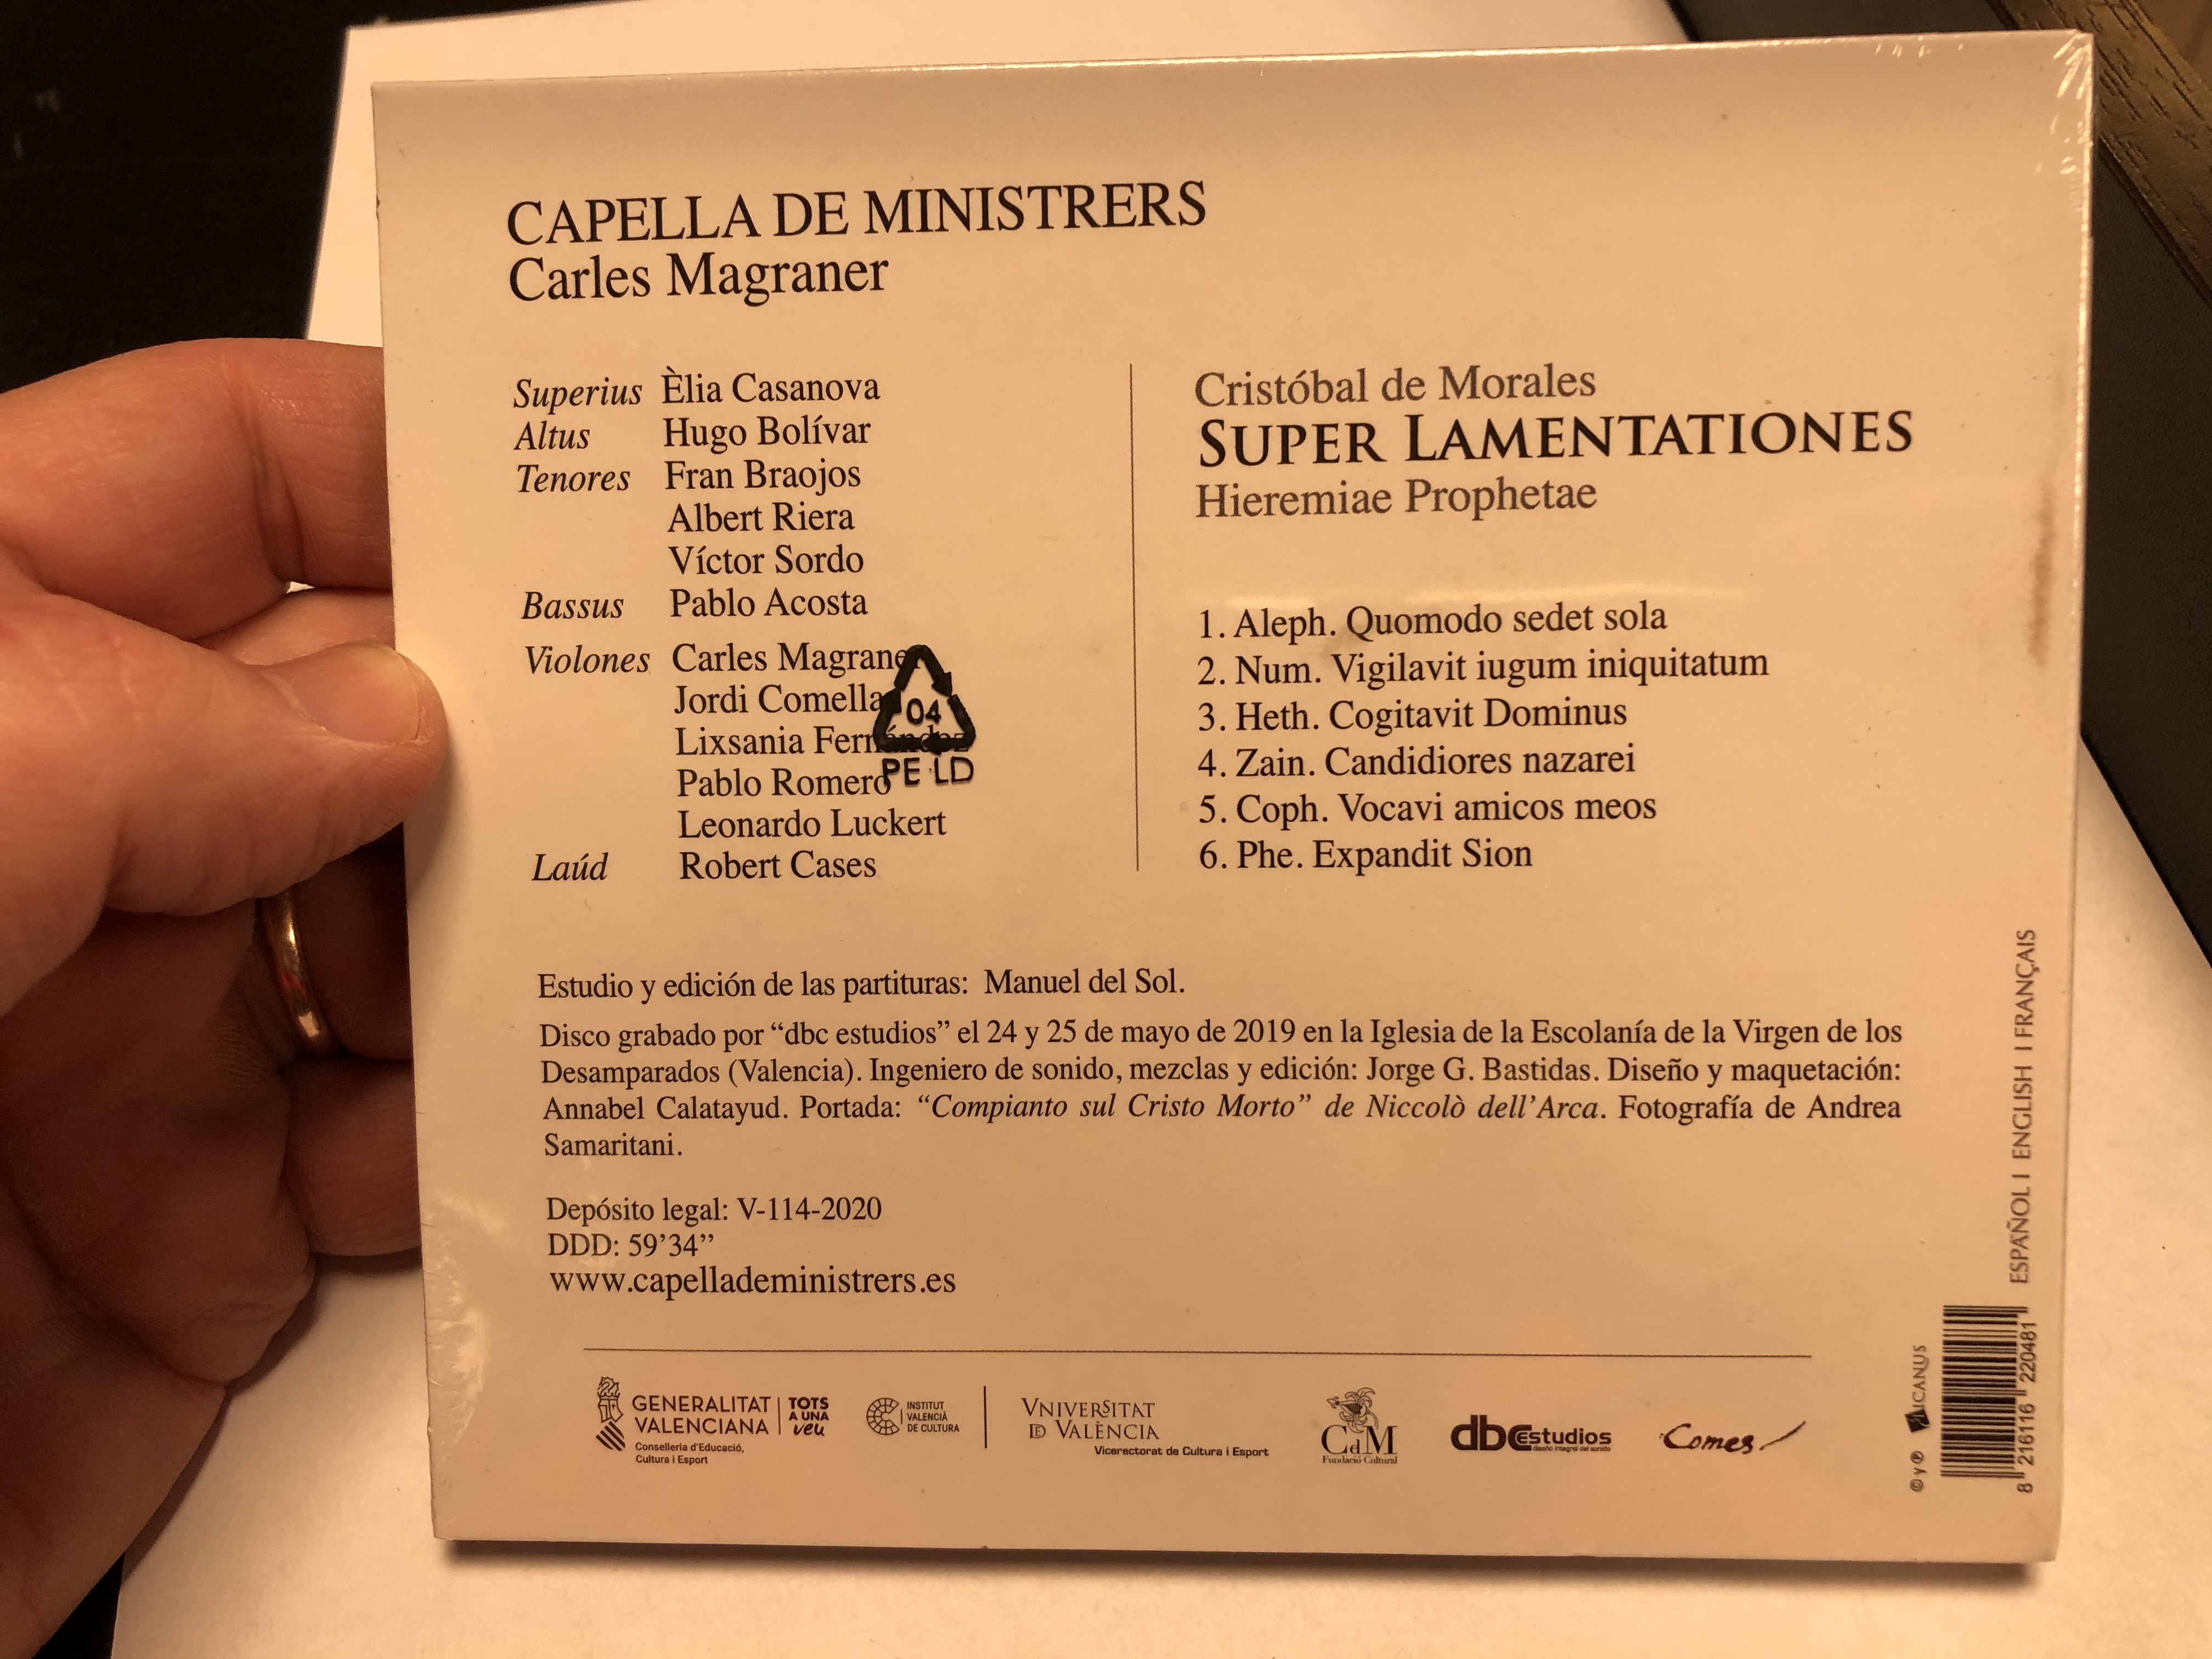 carles-magraner-capella-de-ministrers-cristobal-de-morales-super-lamentationes-audio-cd-v-114-2020-2-.jpg